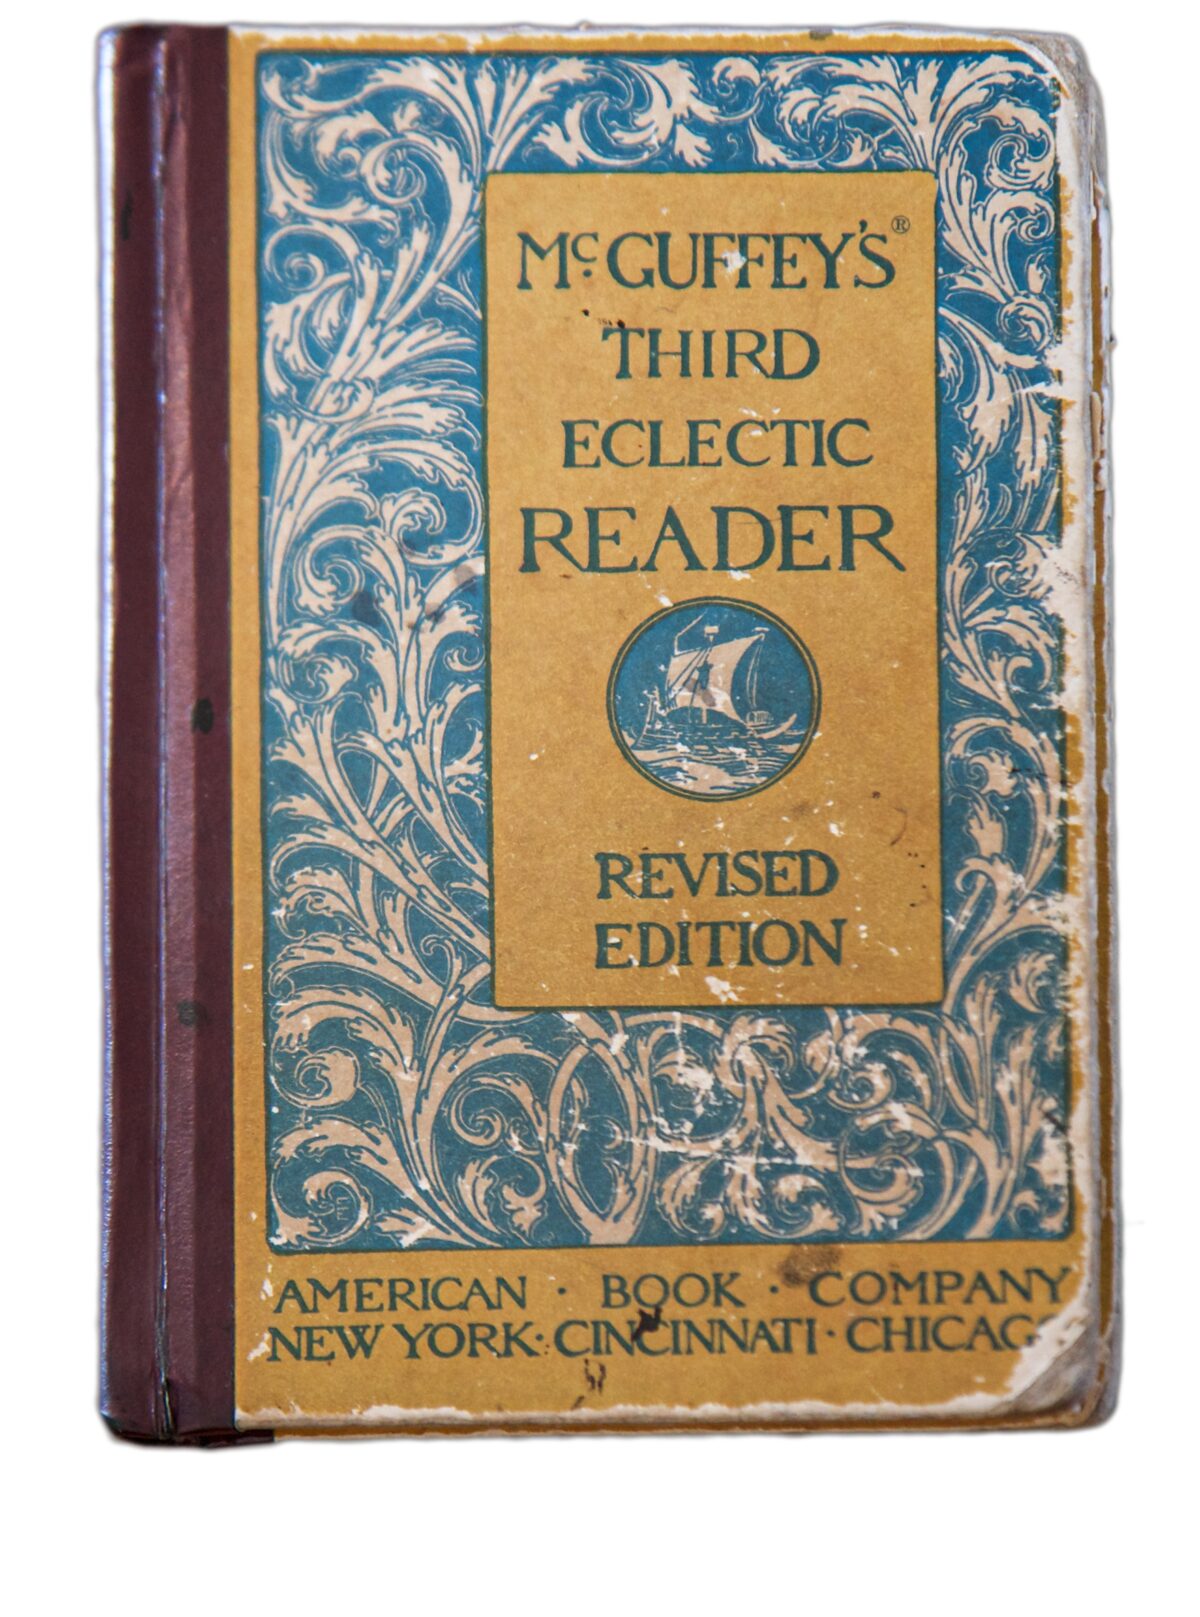 Bộ sách Eclectic Readers (còn gọi là McGuffey Readers) là một bộ sách giáo khoa từ lớp 1 đến lớp 6 đã được sử dụng phổ biến trong các ngôi trường của Mỹ quốc từ giữa thế kỷ 19 đến đầu thế kỷ 20. (Ảnh: Rob Shenk (CC BY-SA 2.0, CreativeCommons.org/licenses/ by-sa/2.0))